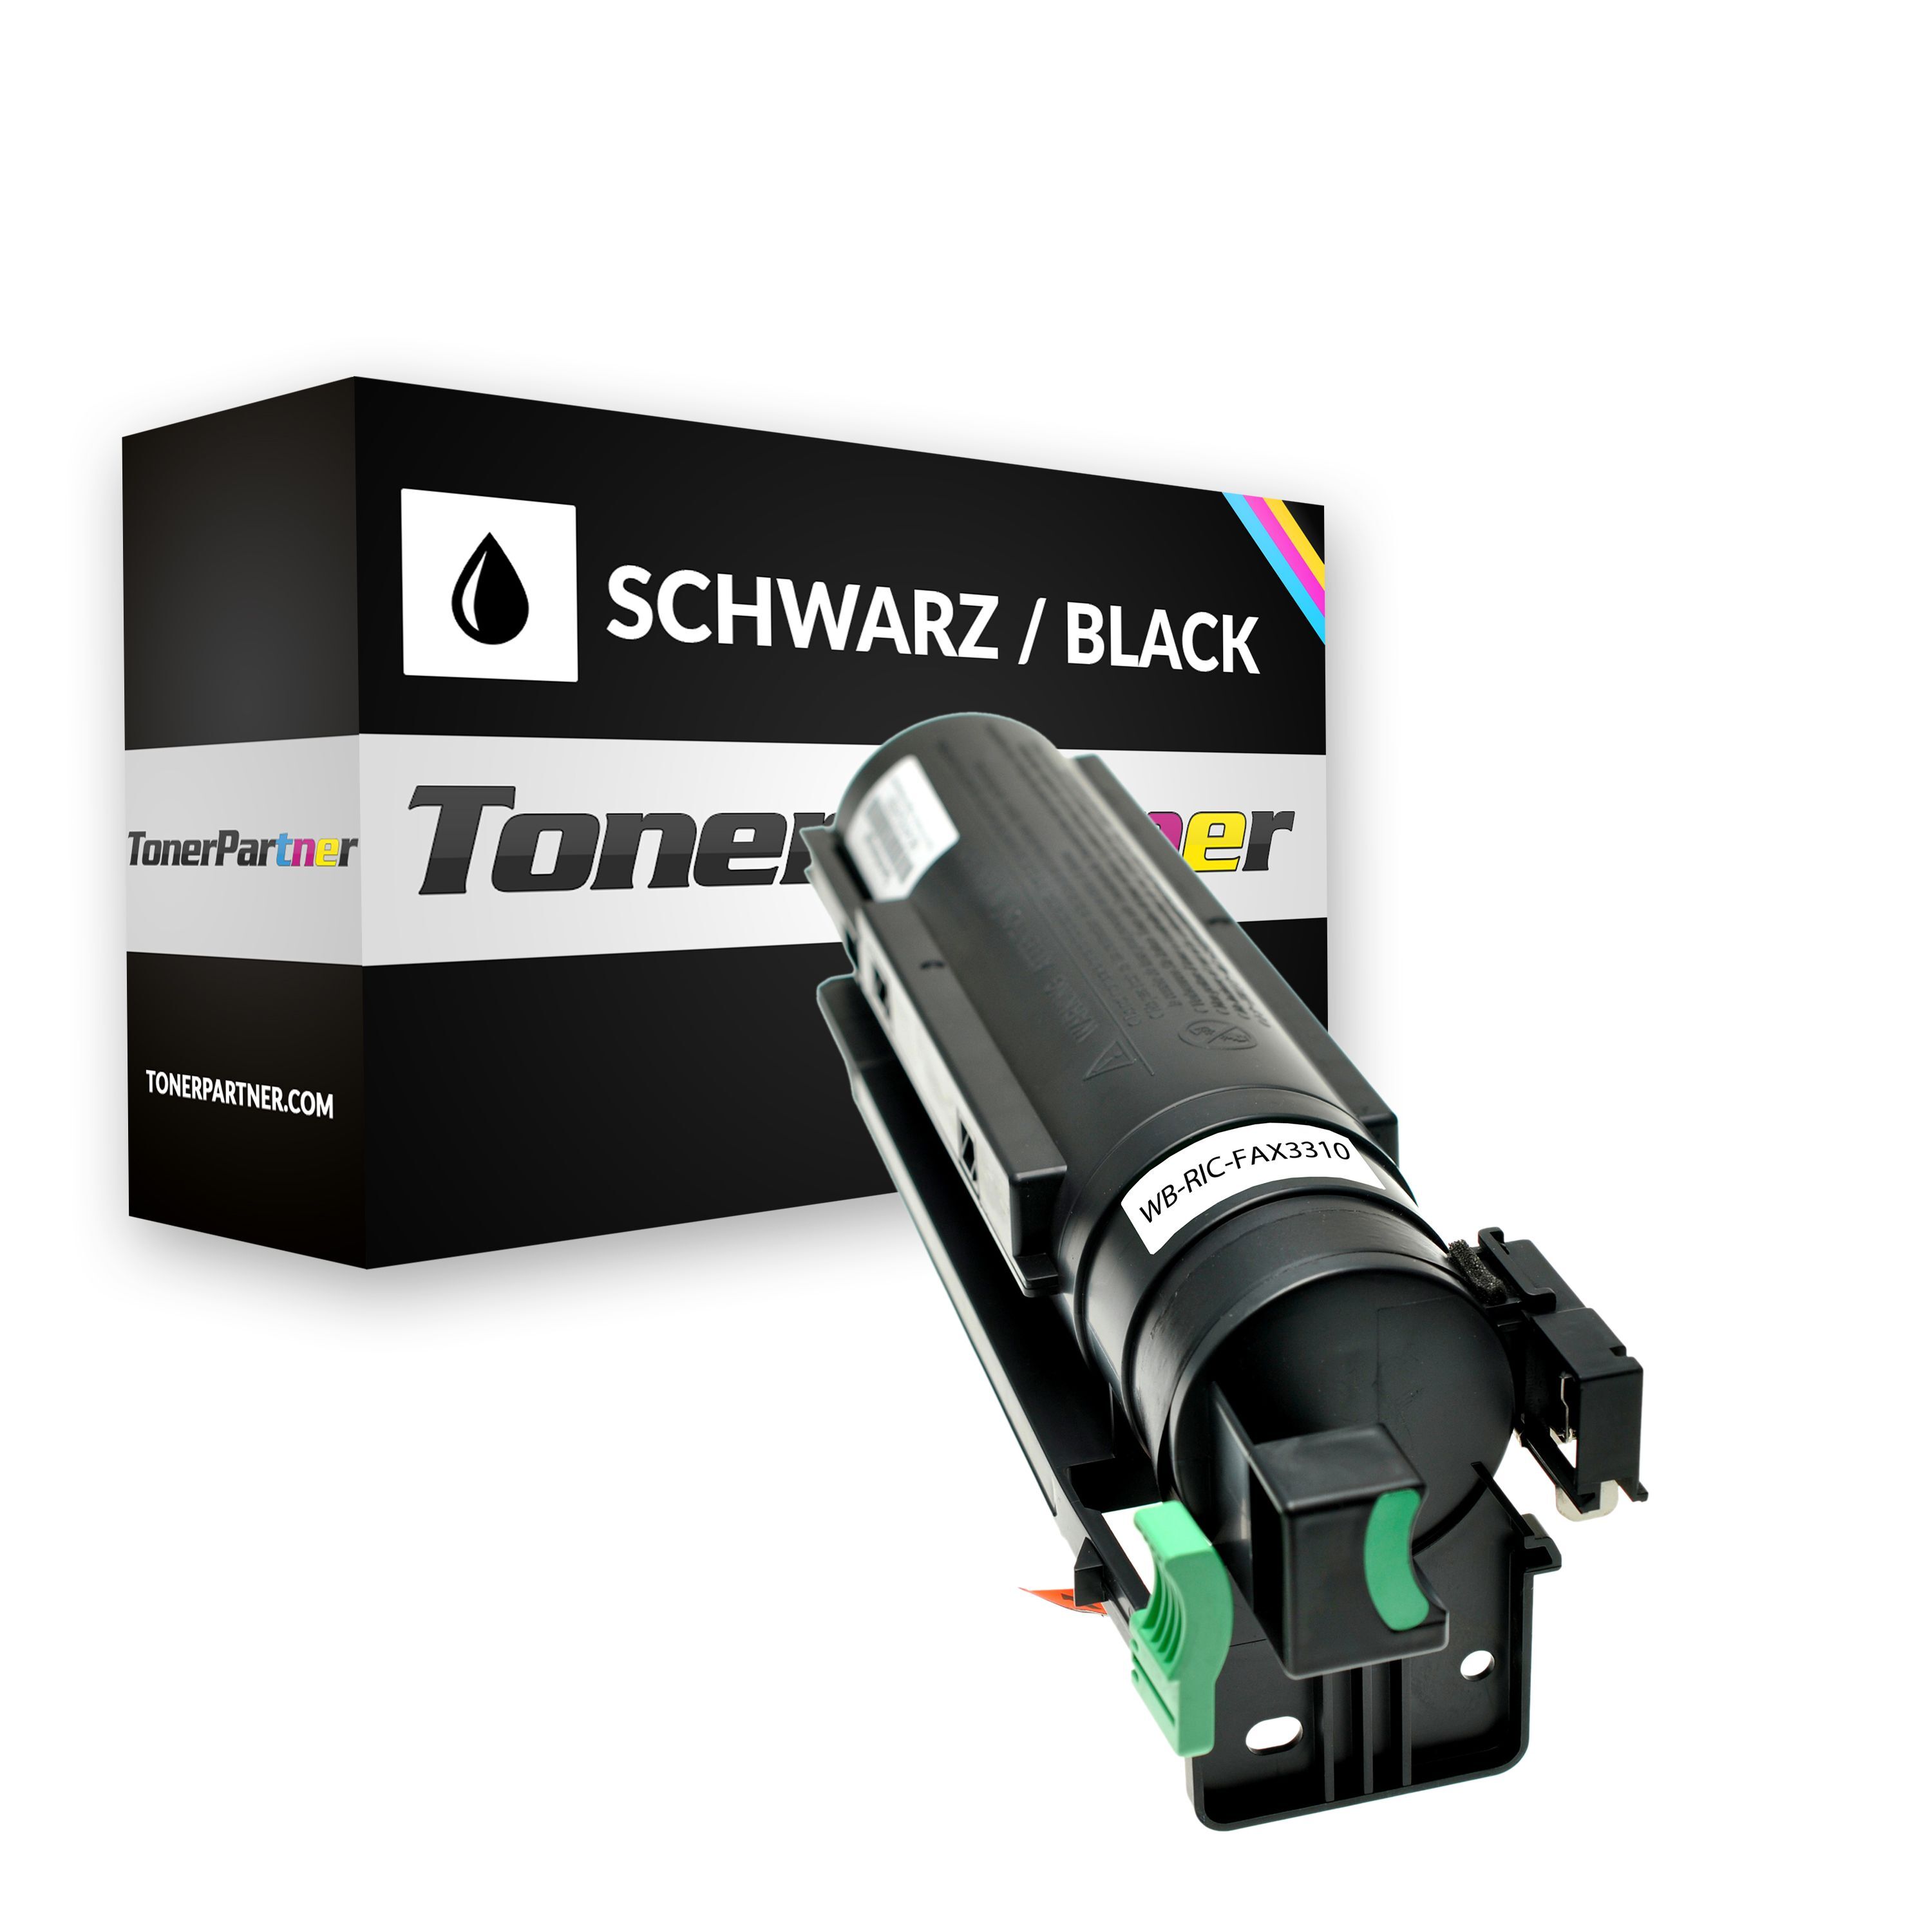 TonerPartner Kompatibel zu Ricoh Fax 3300 Series Toner (TYPE 1260 D / 430351) schwarz, 5.000 Seiten, 1,14 Rp pro Seite, Inhalt: 415 g von TonerPartner